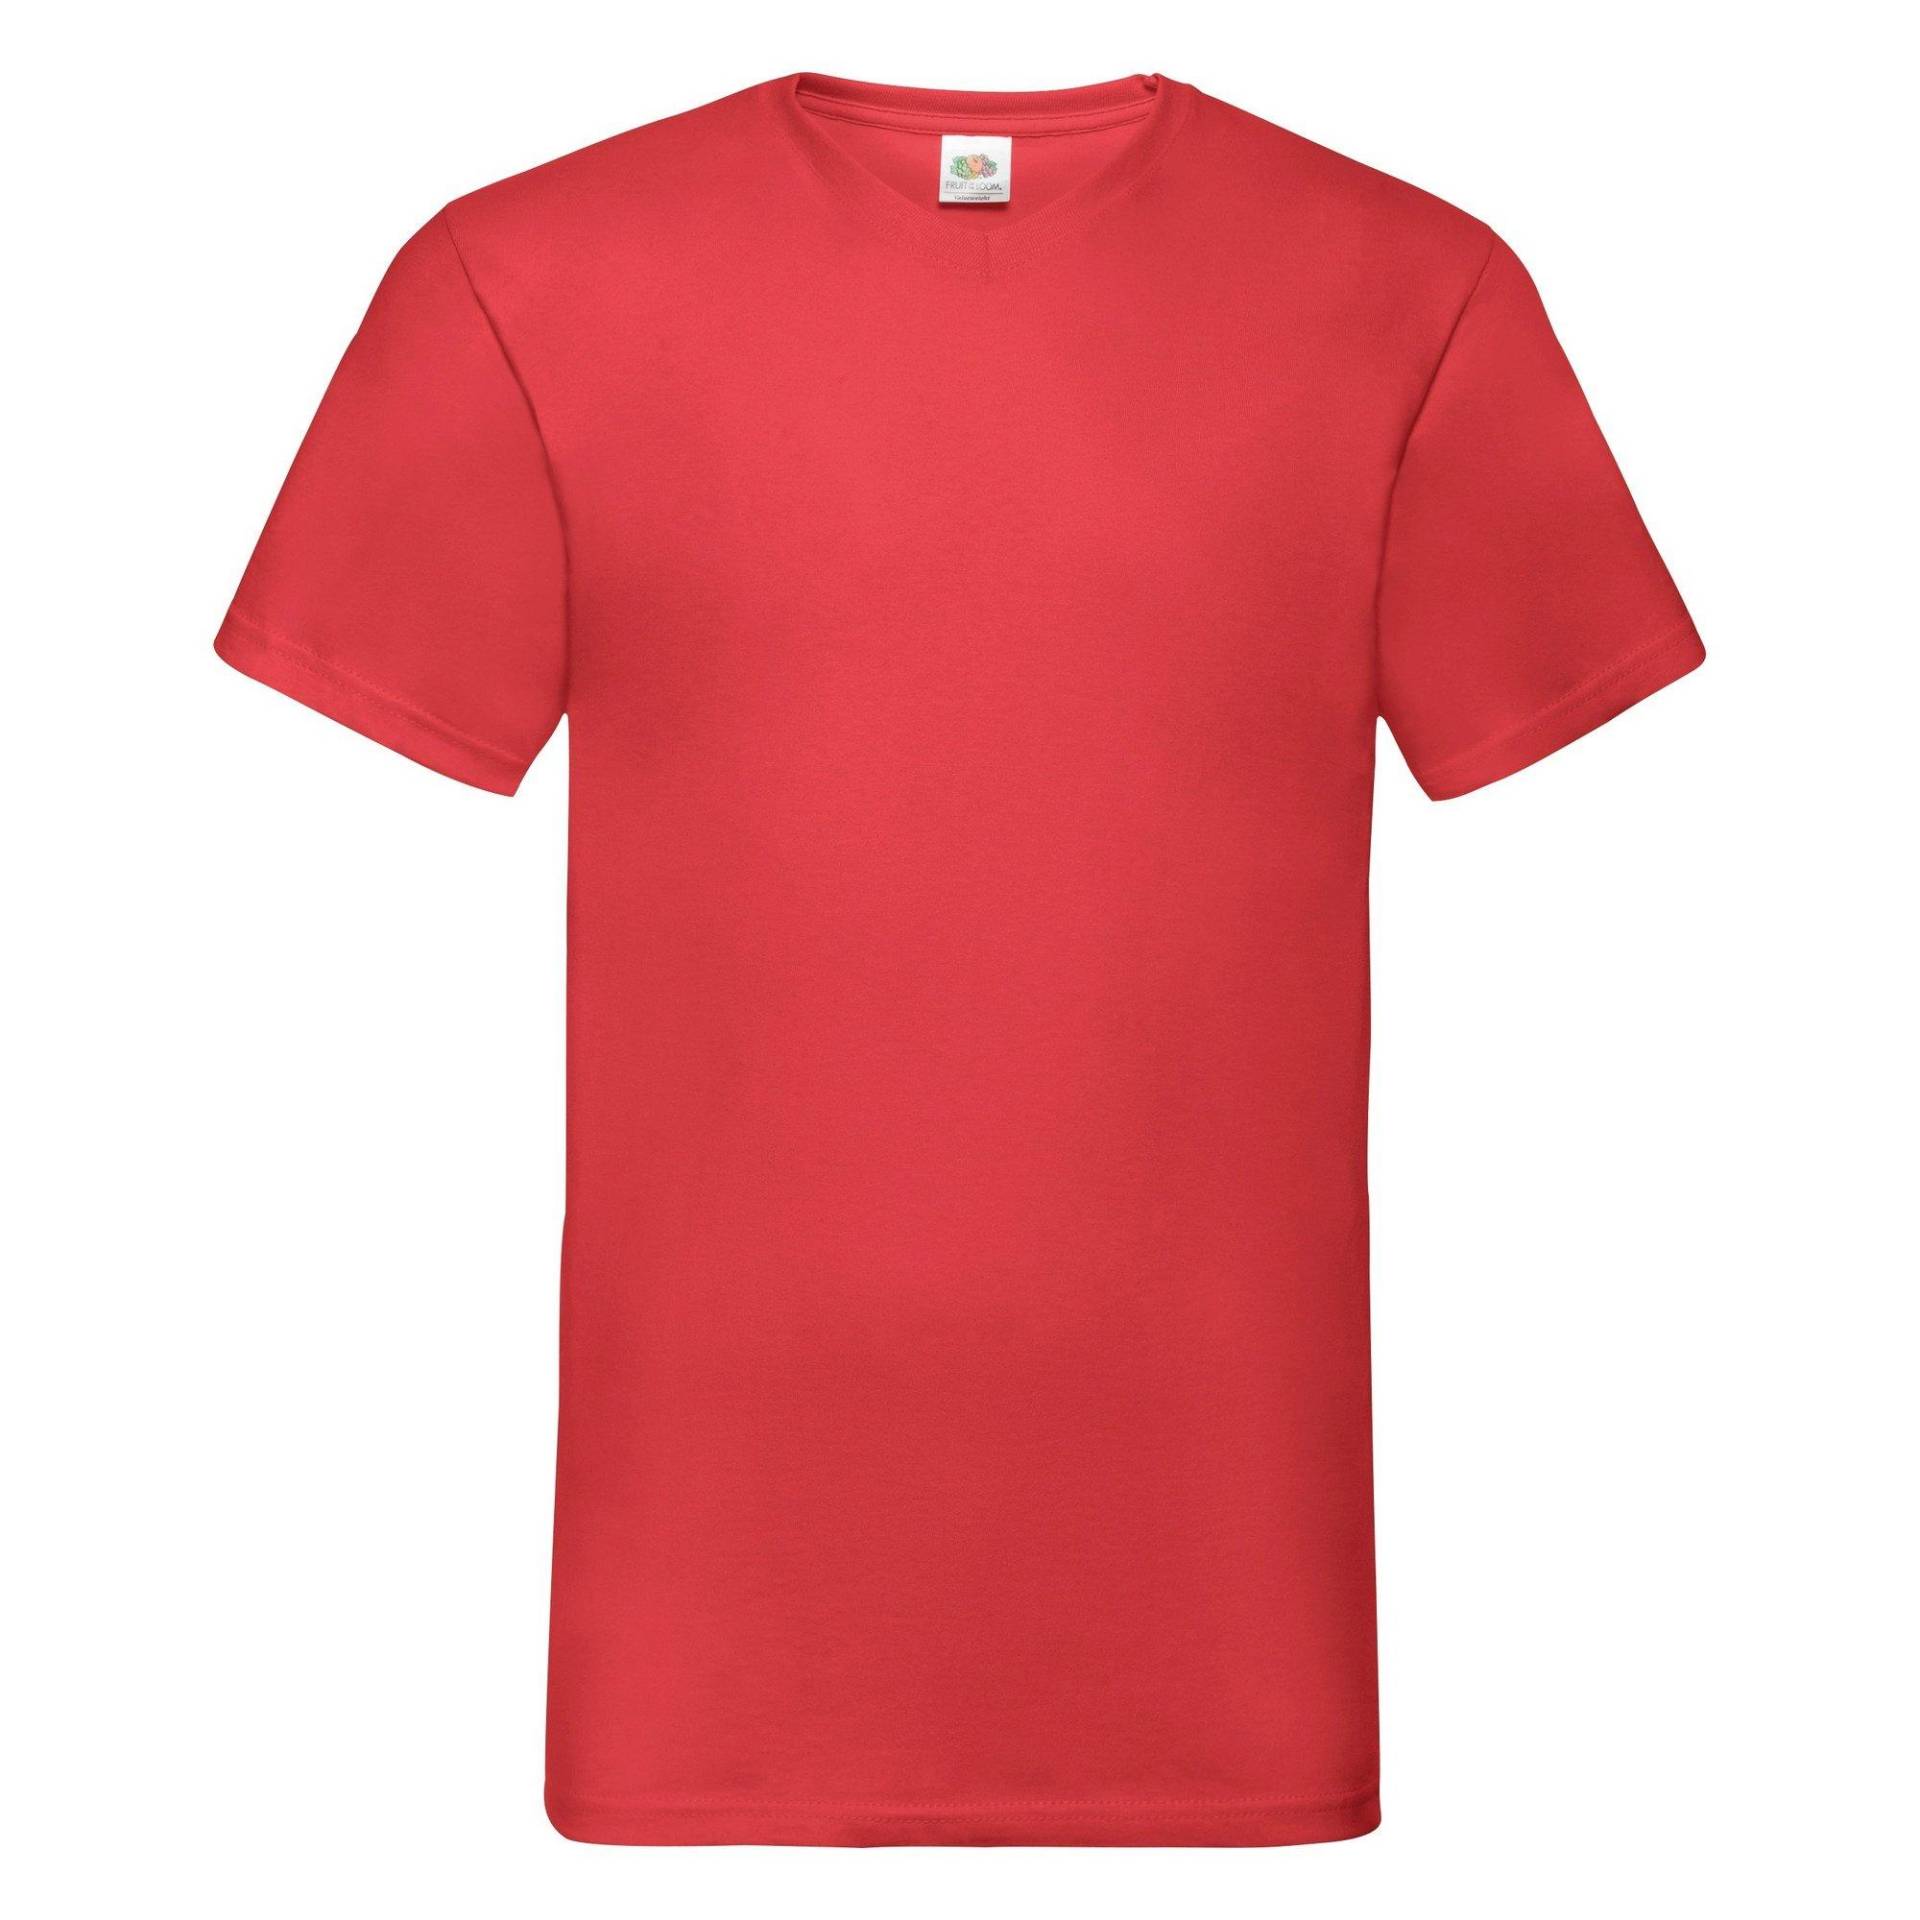 Tshirt Für Männer, Kurzärmlig Herren Rot Bunt 3XL von Fruit of the Loom